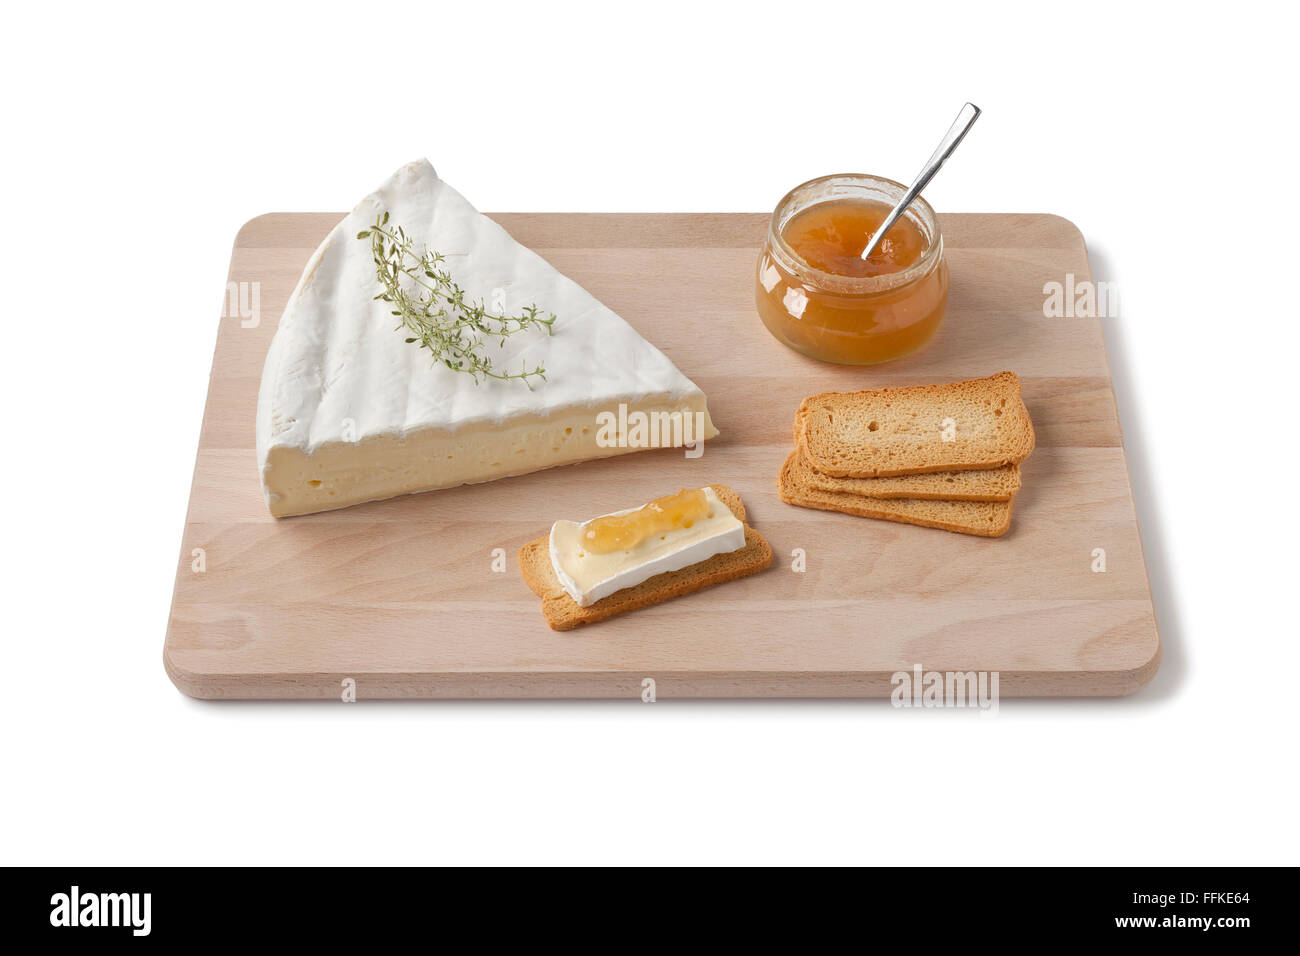 Brie Käse mit Thymian, Toast und Obst Sauce als Dessert auf einem Holzbrett auf weißem Hintergrund Stockfoto